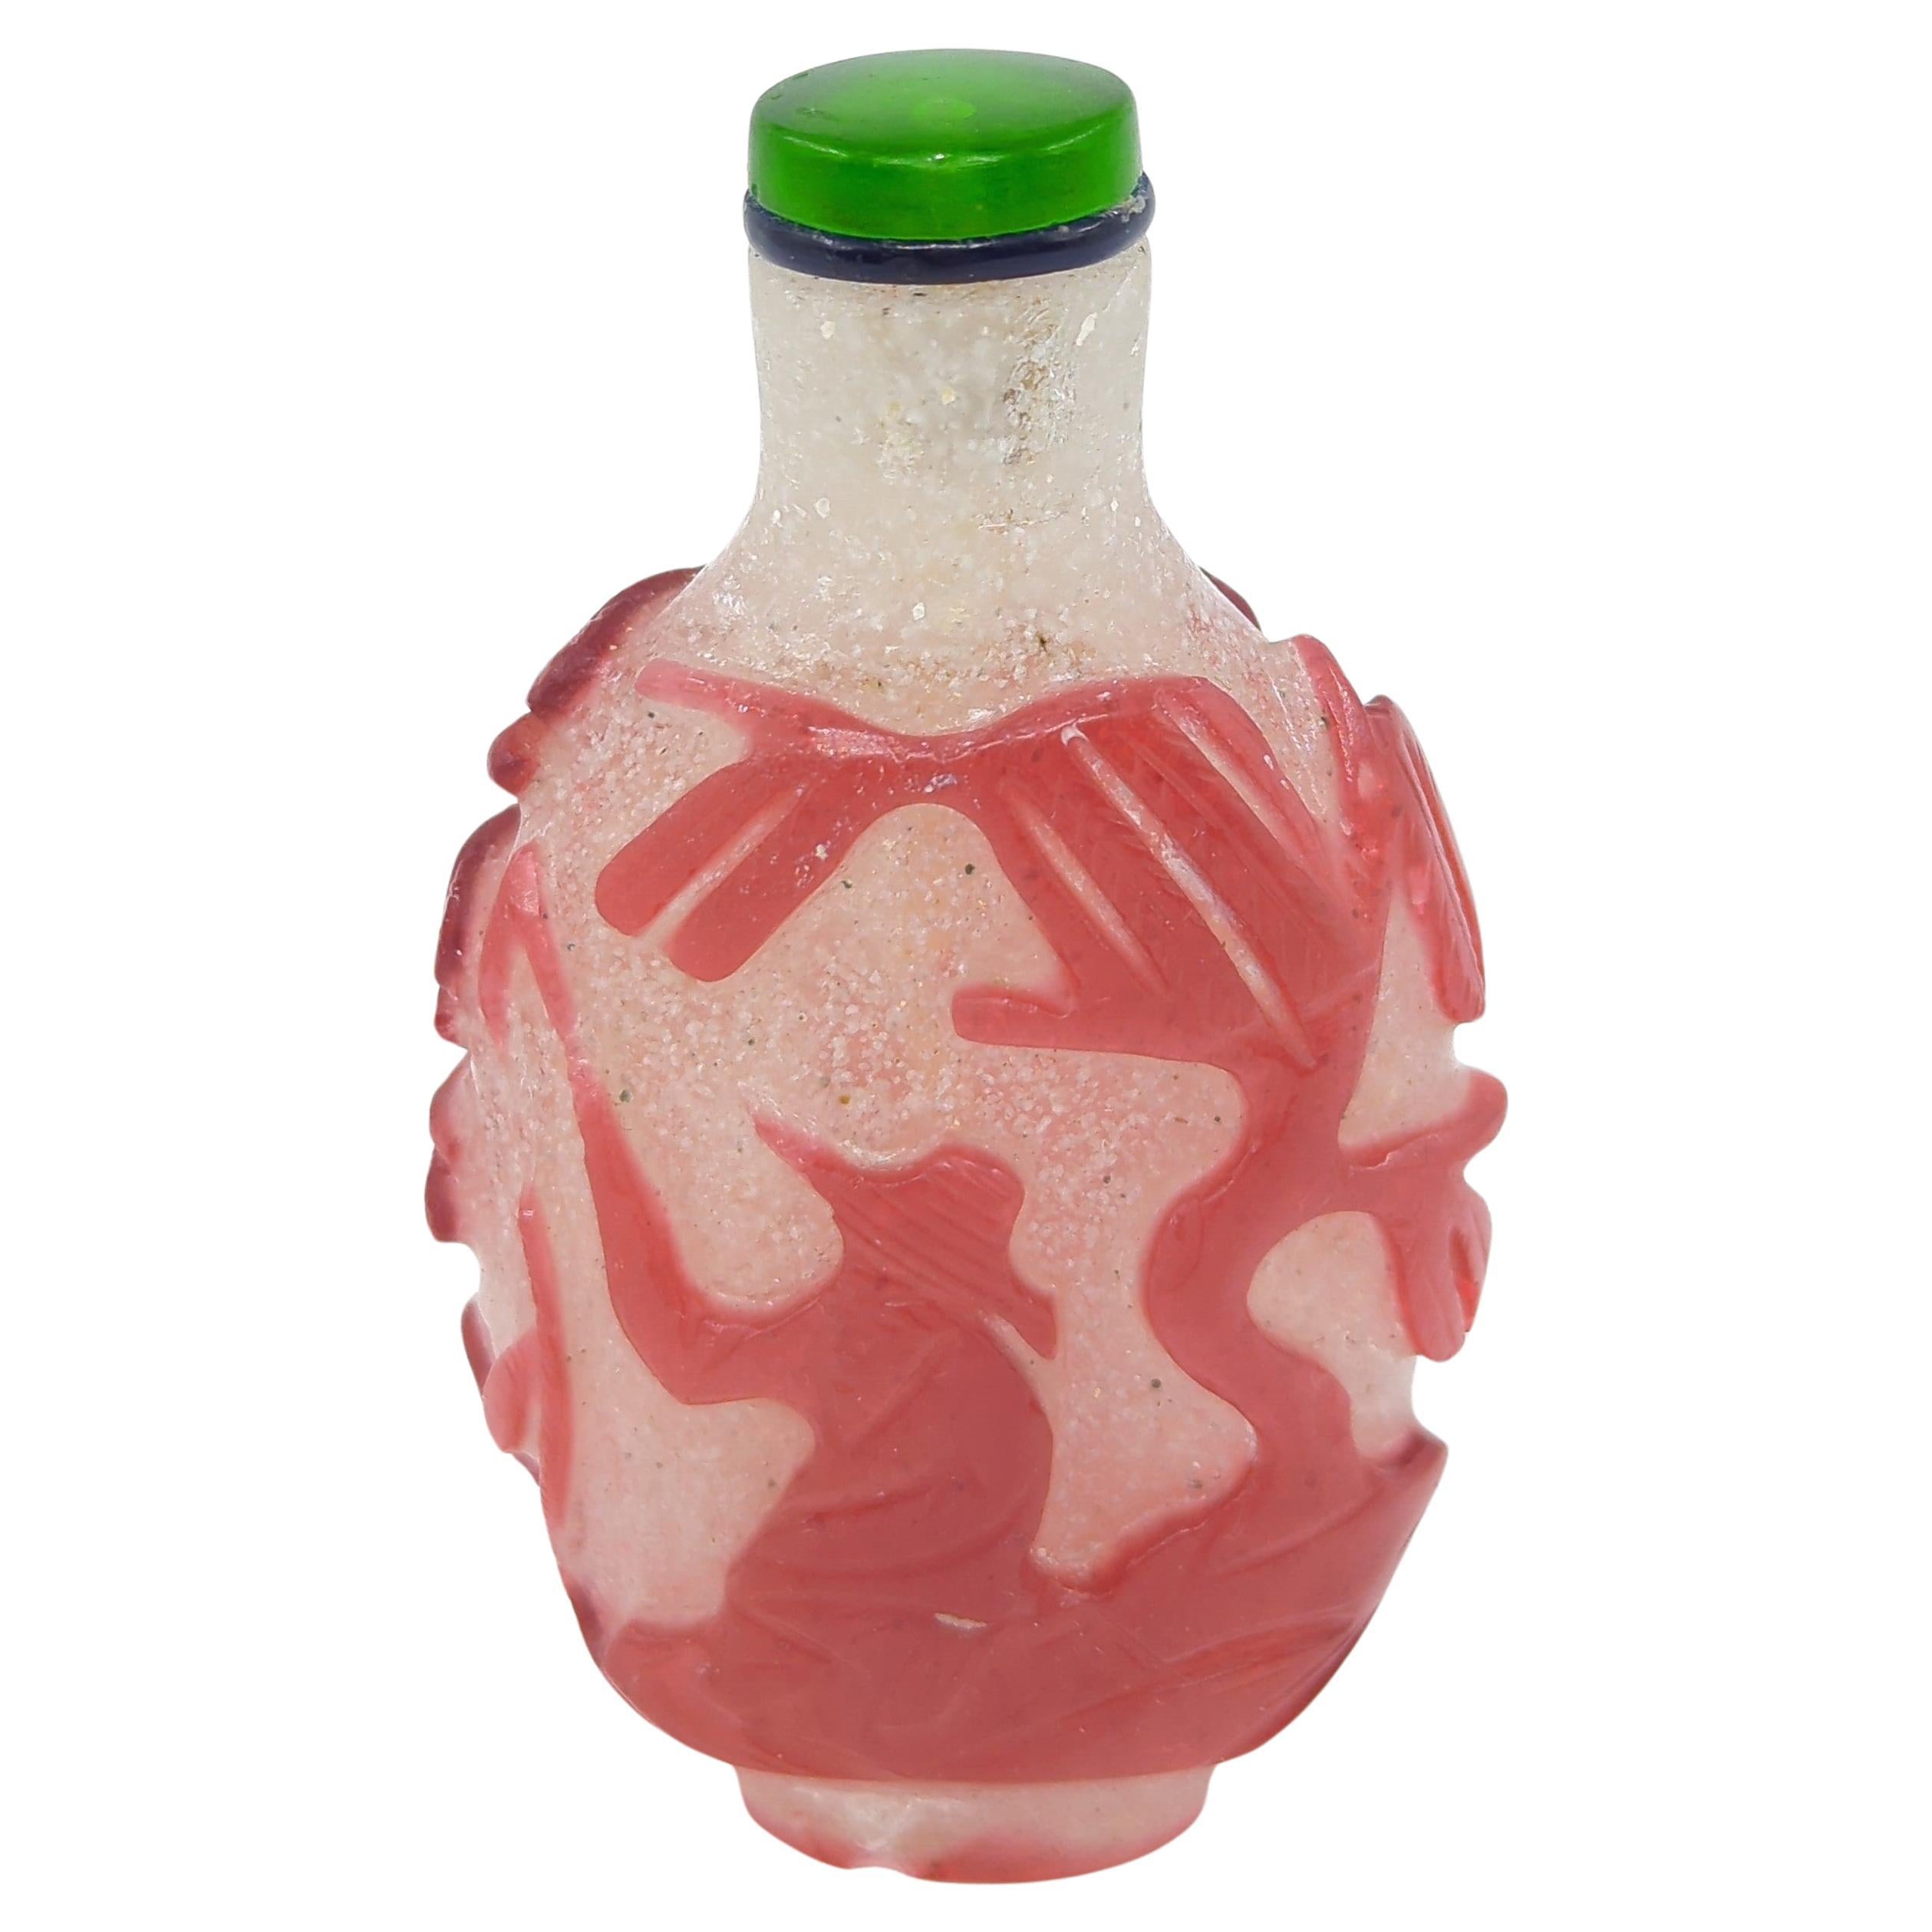 Antike Schnupftabakflasche aus rubinrotem Glas der späten Qing- bis Republik-Periode auf Schneesturmgrund, die eine Landschaftsszene mit einer Holzsammlerfigur auf der einen Seite und einer Fischerfigur auf der anderen Seite darstellt.

Die Szenen